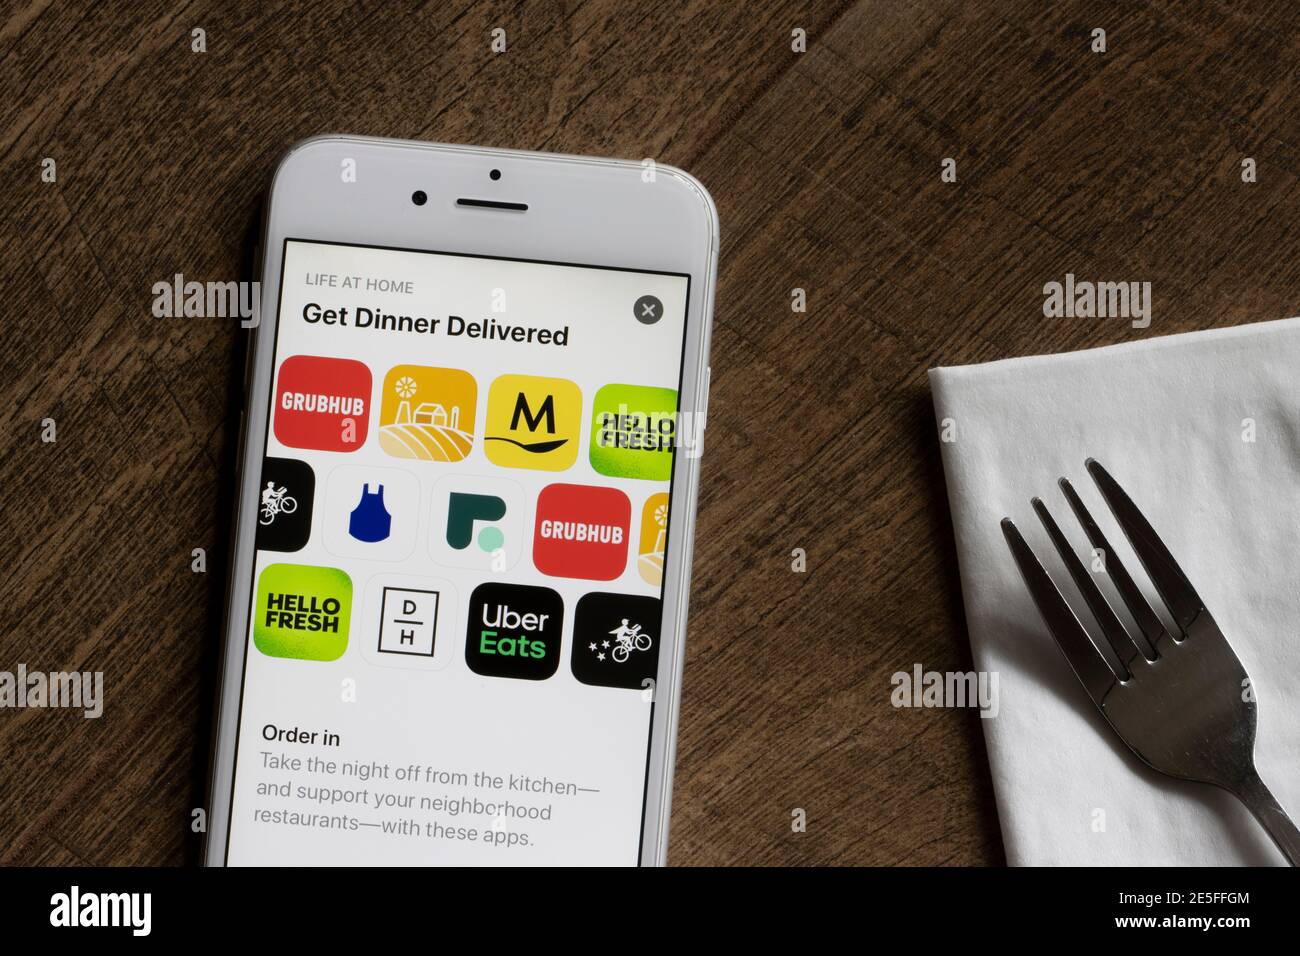 Verschiedene Apps für die Lebensmittelzustellung sind auf einem iPhone zu sehen - Grubhub, Uber Eats, Postmates, Fresh, Daily Harvest, HelloFresh, Blue Apron, und etc. Stockfoto